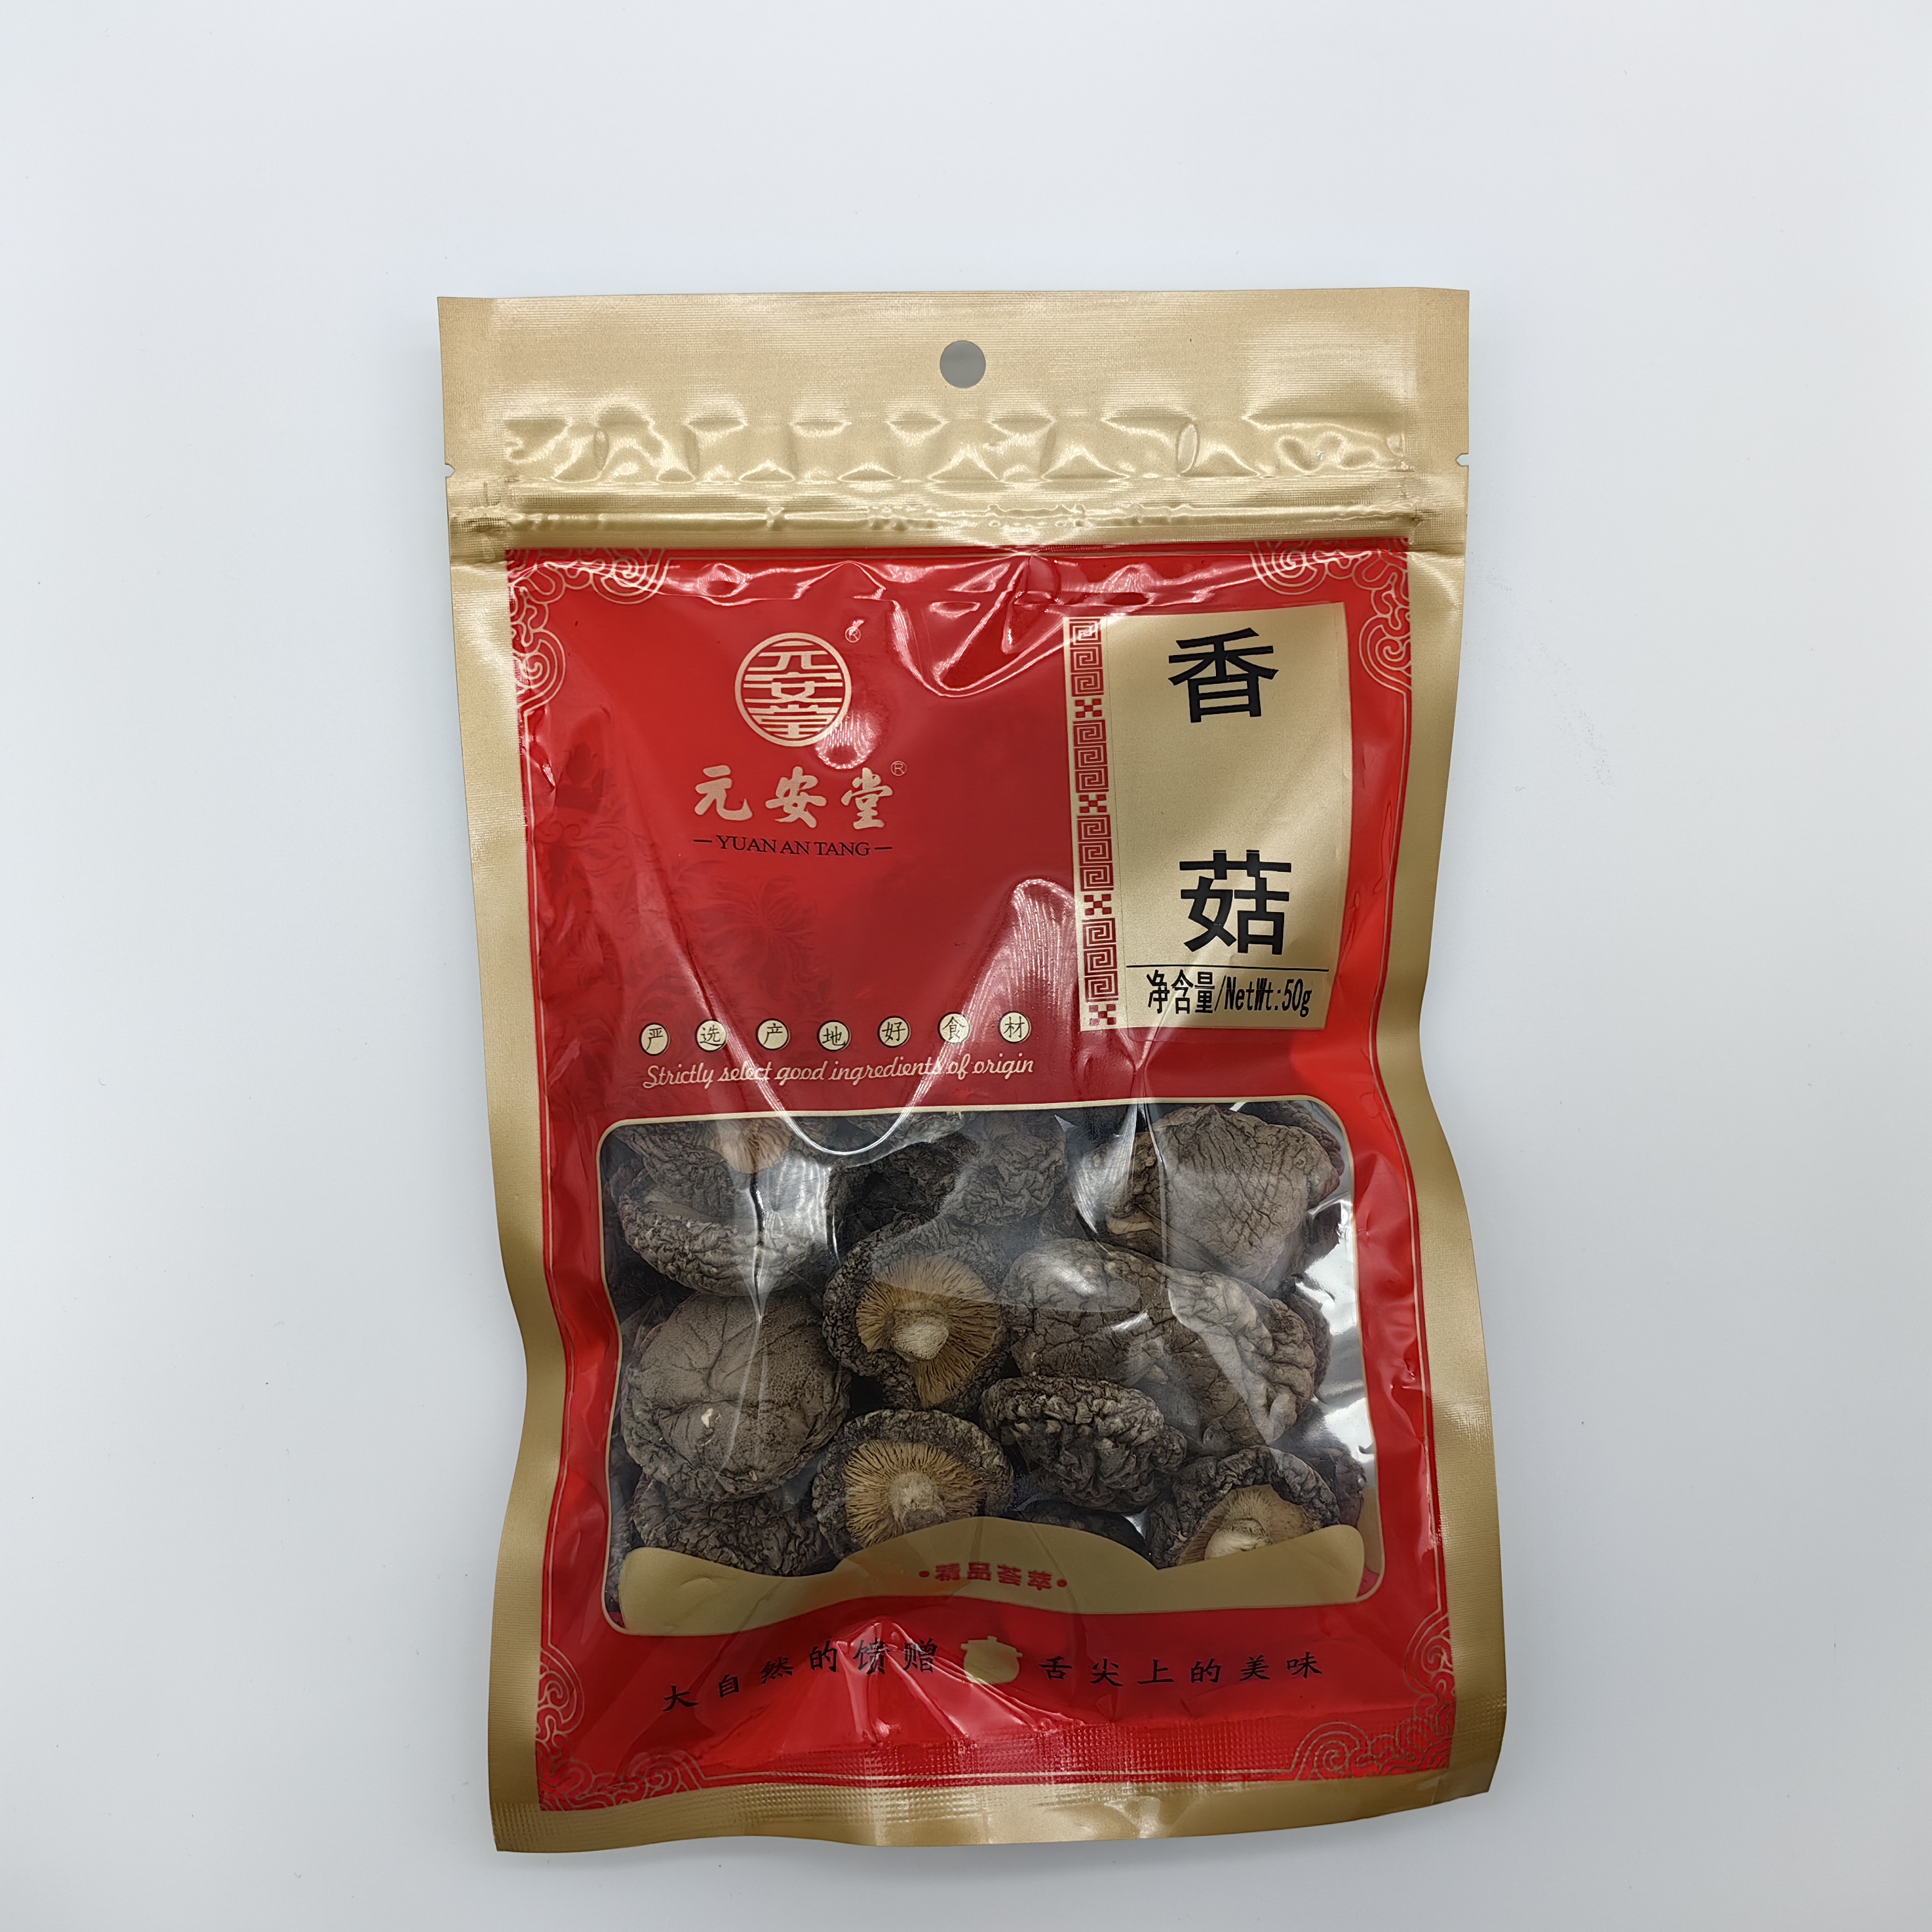 6cm Big Chinese Factory Supply Dried Champignon Shiitake Mushroom